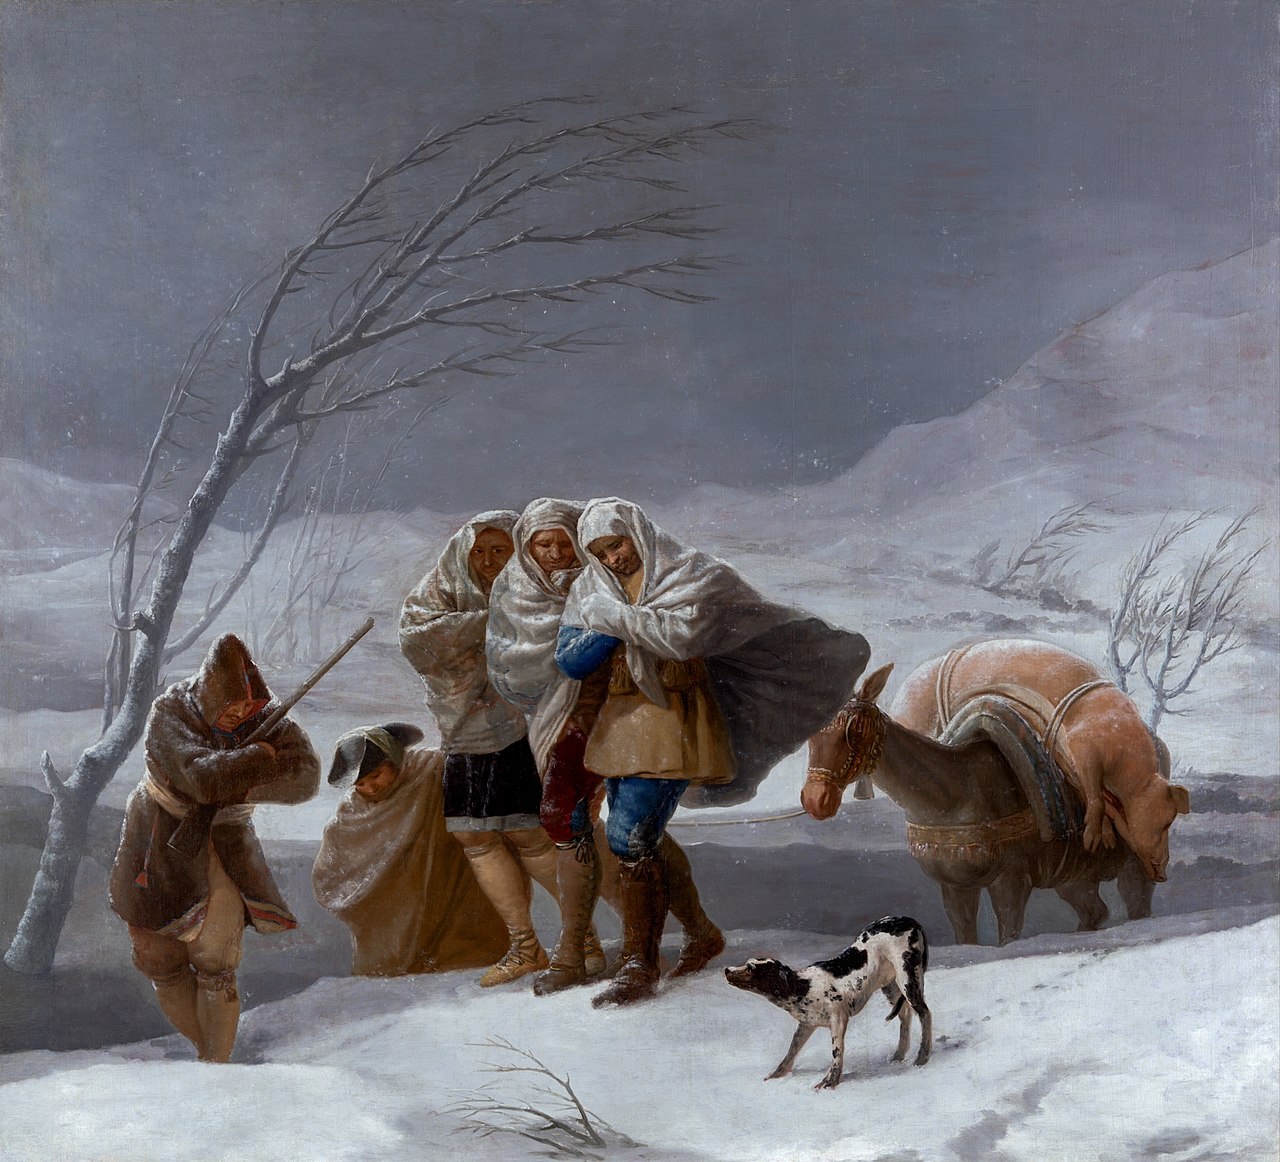 La nevada, painted by Francisco de Goya